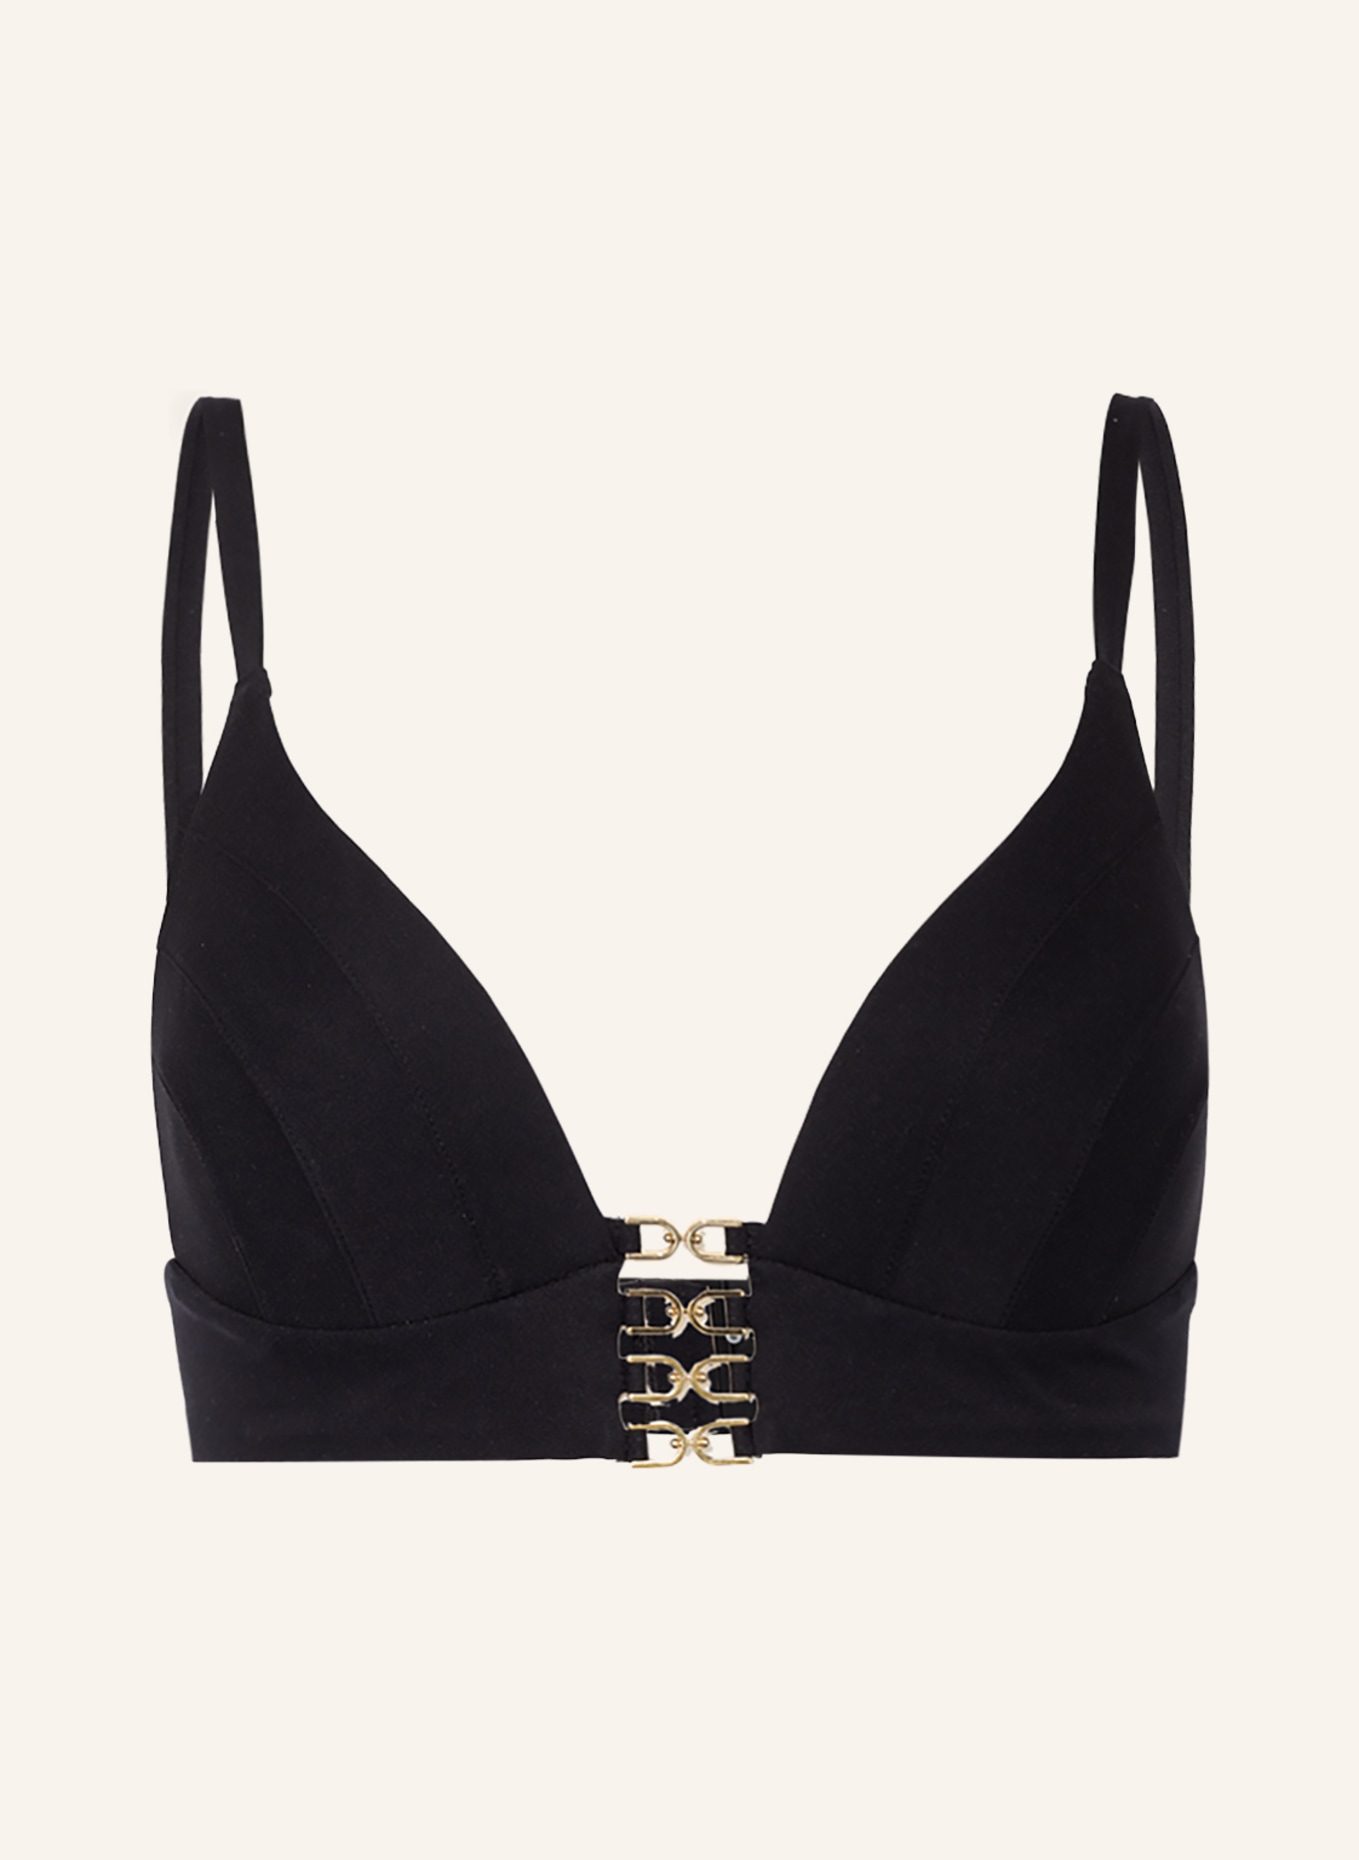 MARYAN MEHLHORN Bralette bikini top HEROINES in black